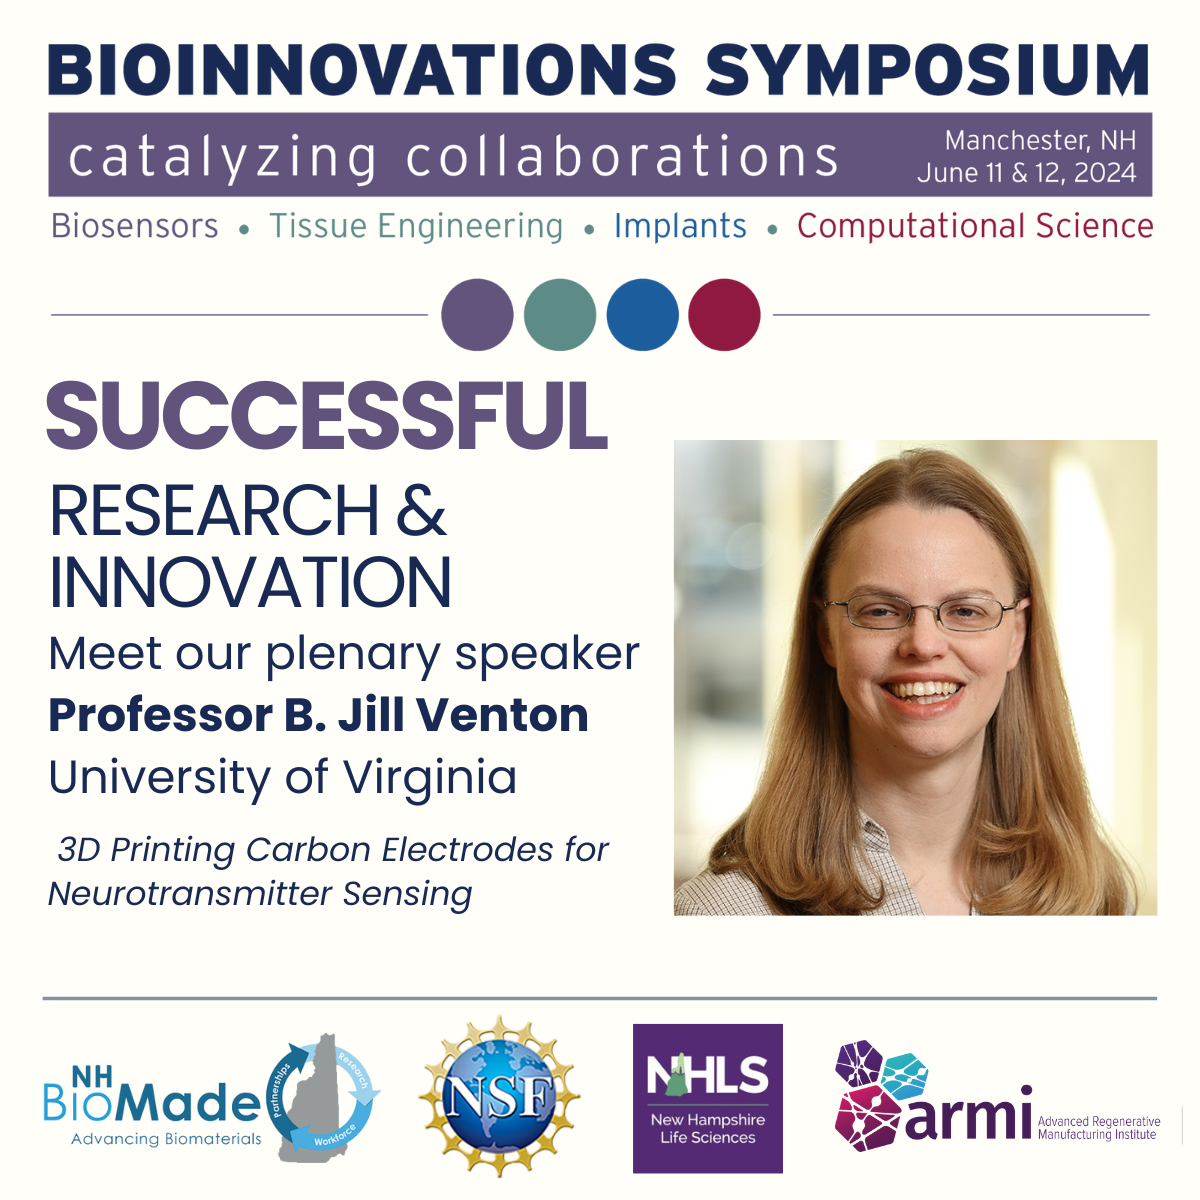 Bioinnovations Symposium: Plenary Speaker B. Jill Venton